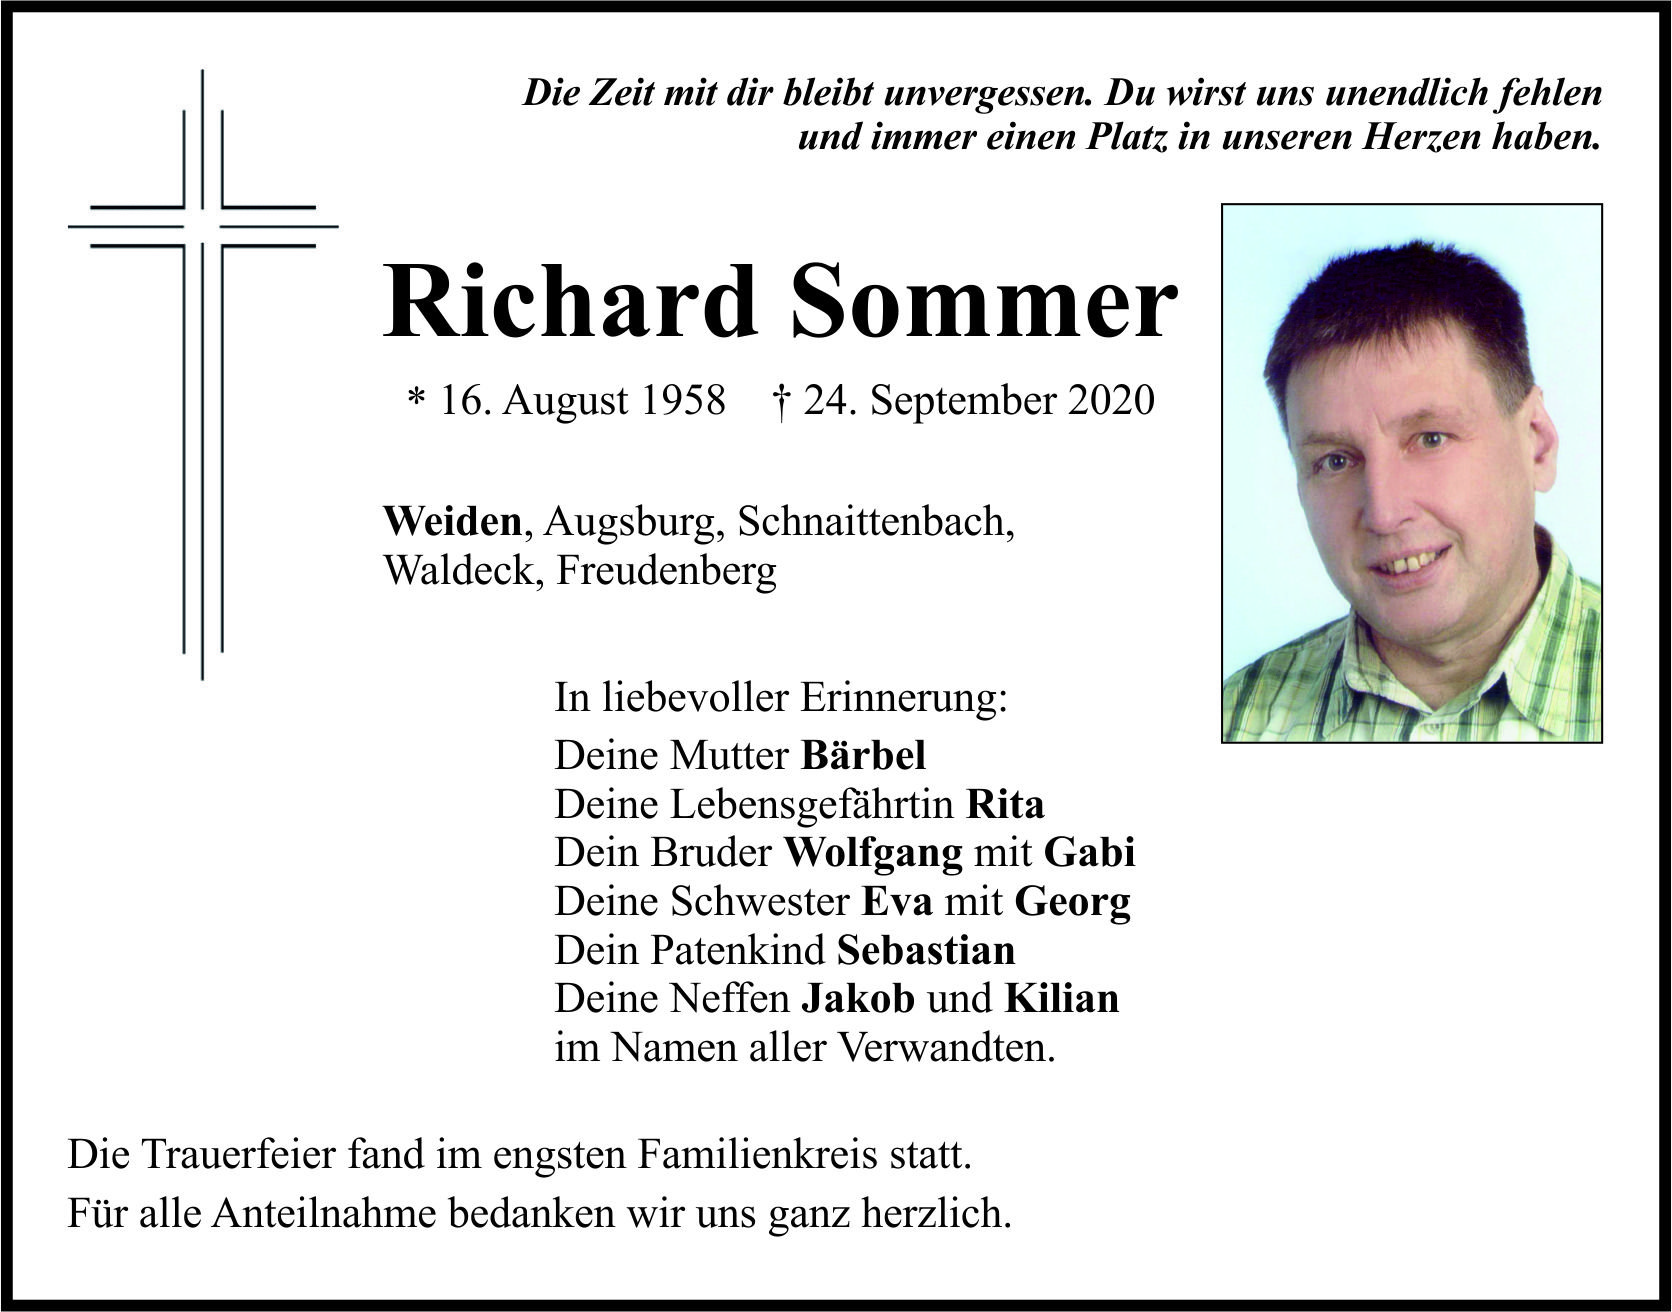 Traueranzeige Richard Sommer, Weiden